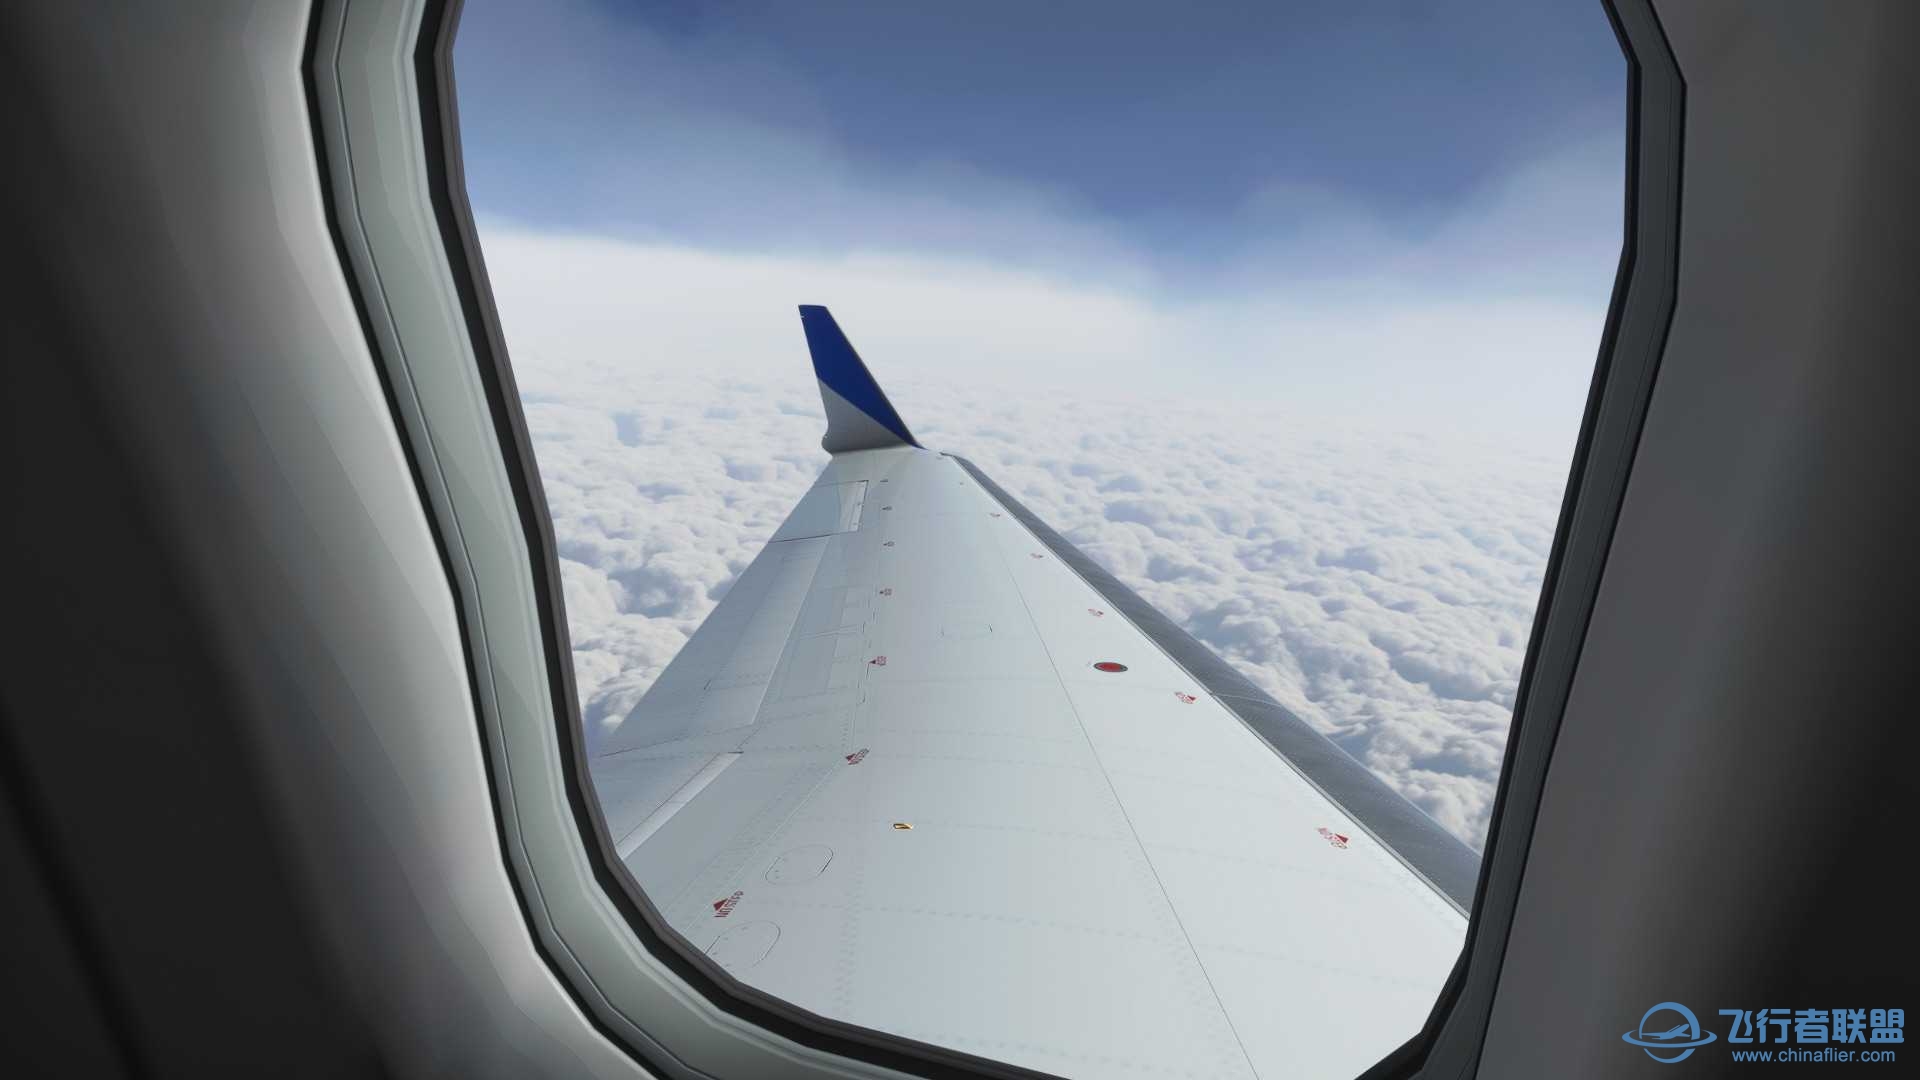 模拟飞行2020怎么调整到客舱视角啊？-5109 